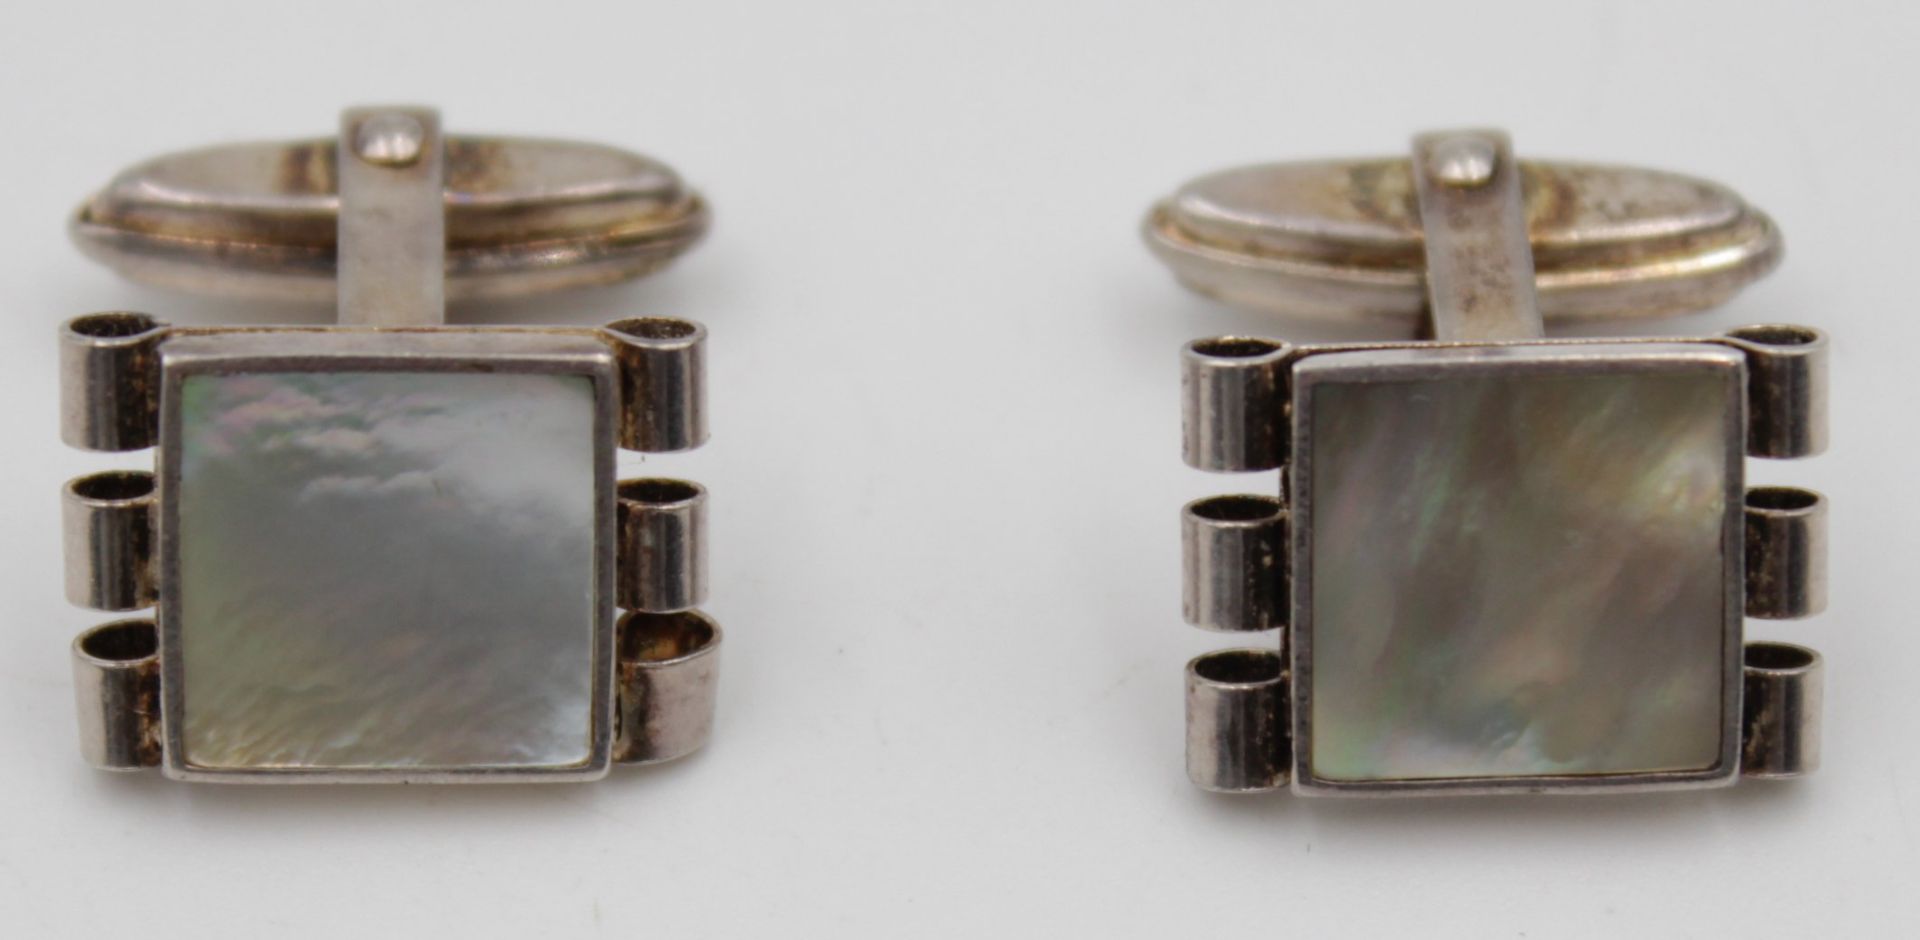 Paar Manschettenknöpfe 835 Silber mit Perlmutt einlagen . L -1,2 cm B- 0,8cm  . G-8,6gr.